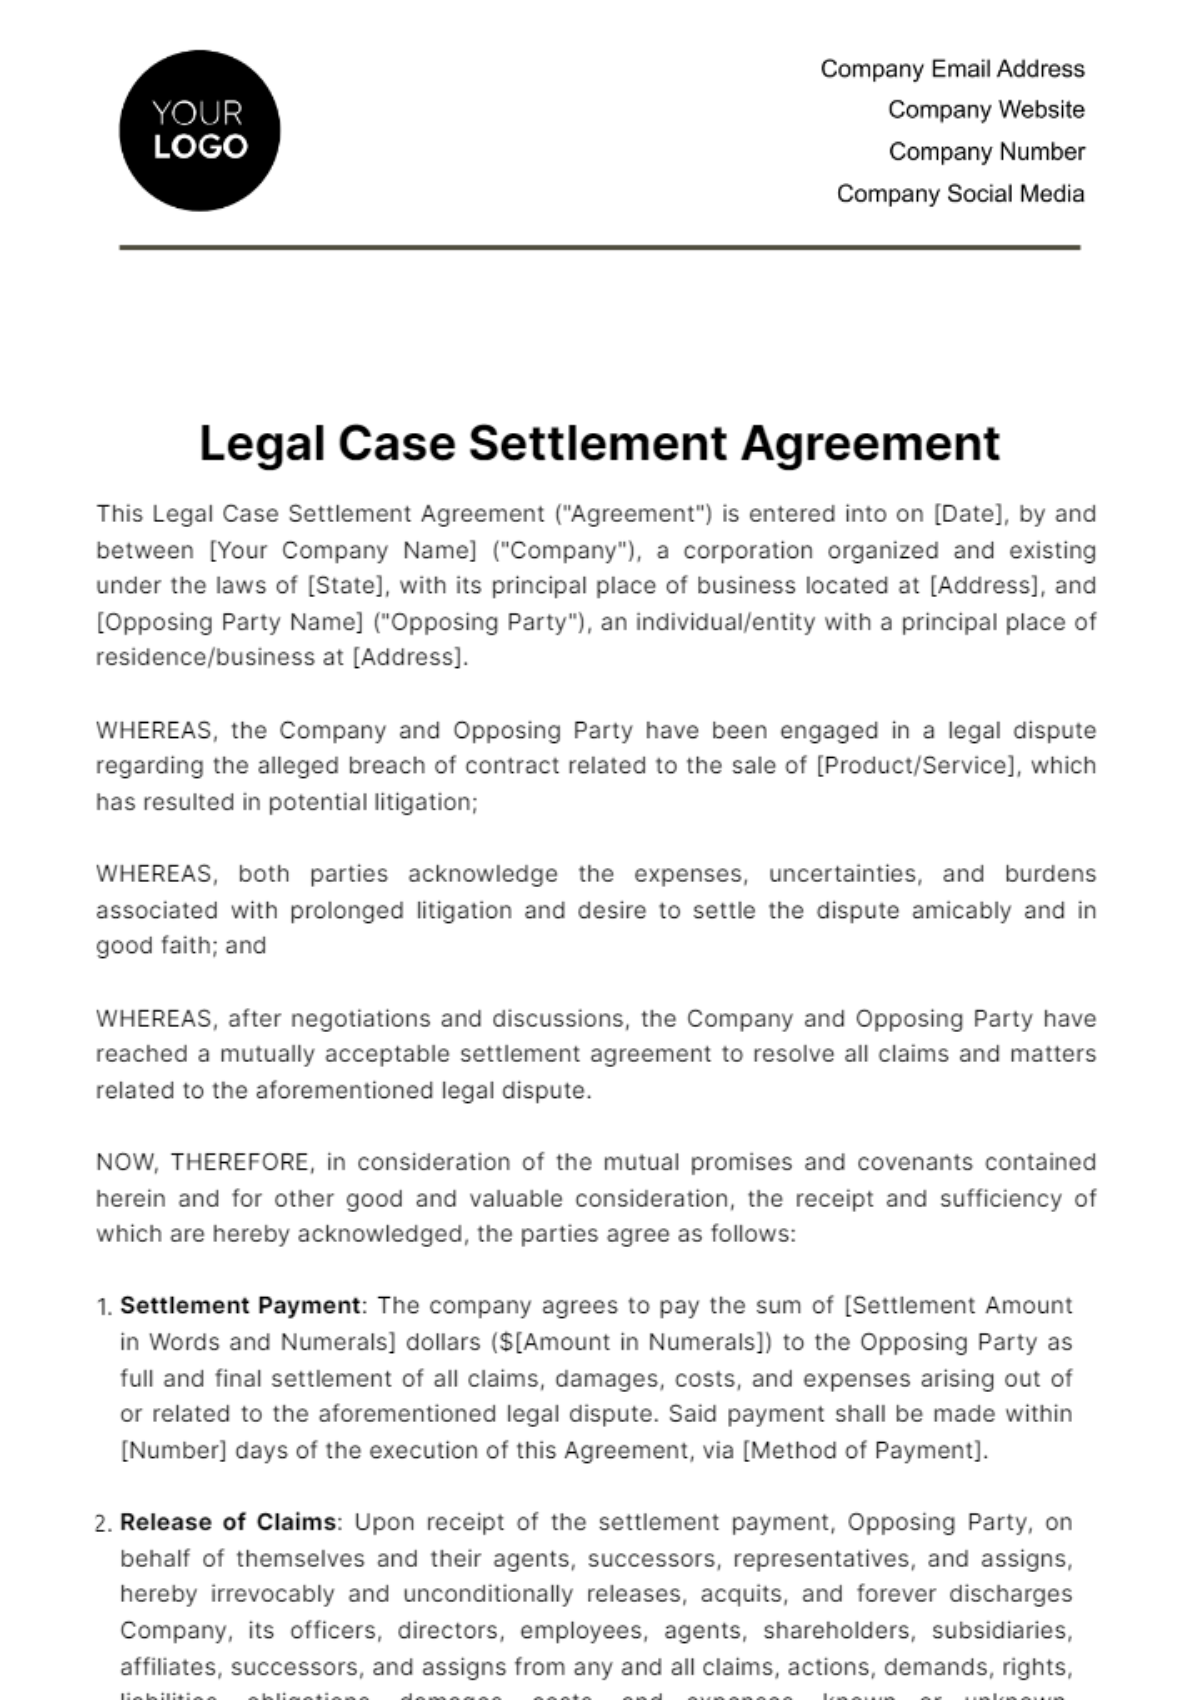 Legal Case Settlement Agreement Template